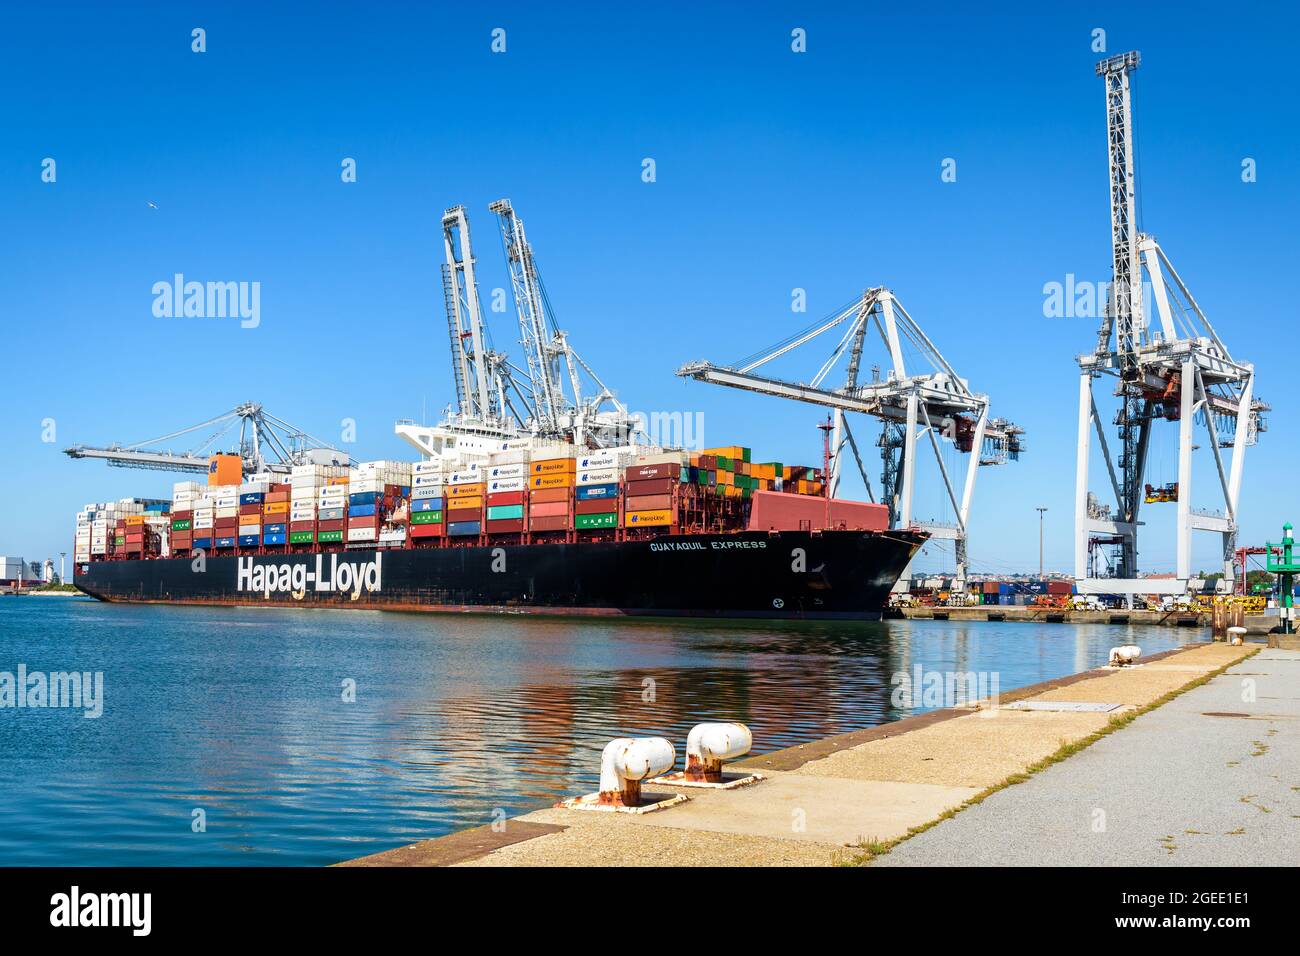 Le navire-conteneur Guayaquil Express de la compagnie de transport Hapag-Lloyd chargé par des grues-portiques à conteneurs dans le port du Havre, France. Banque D'Images